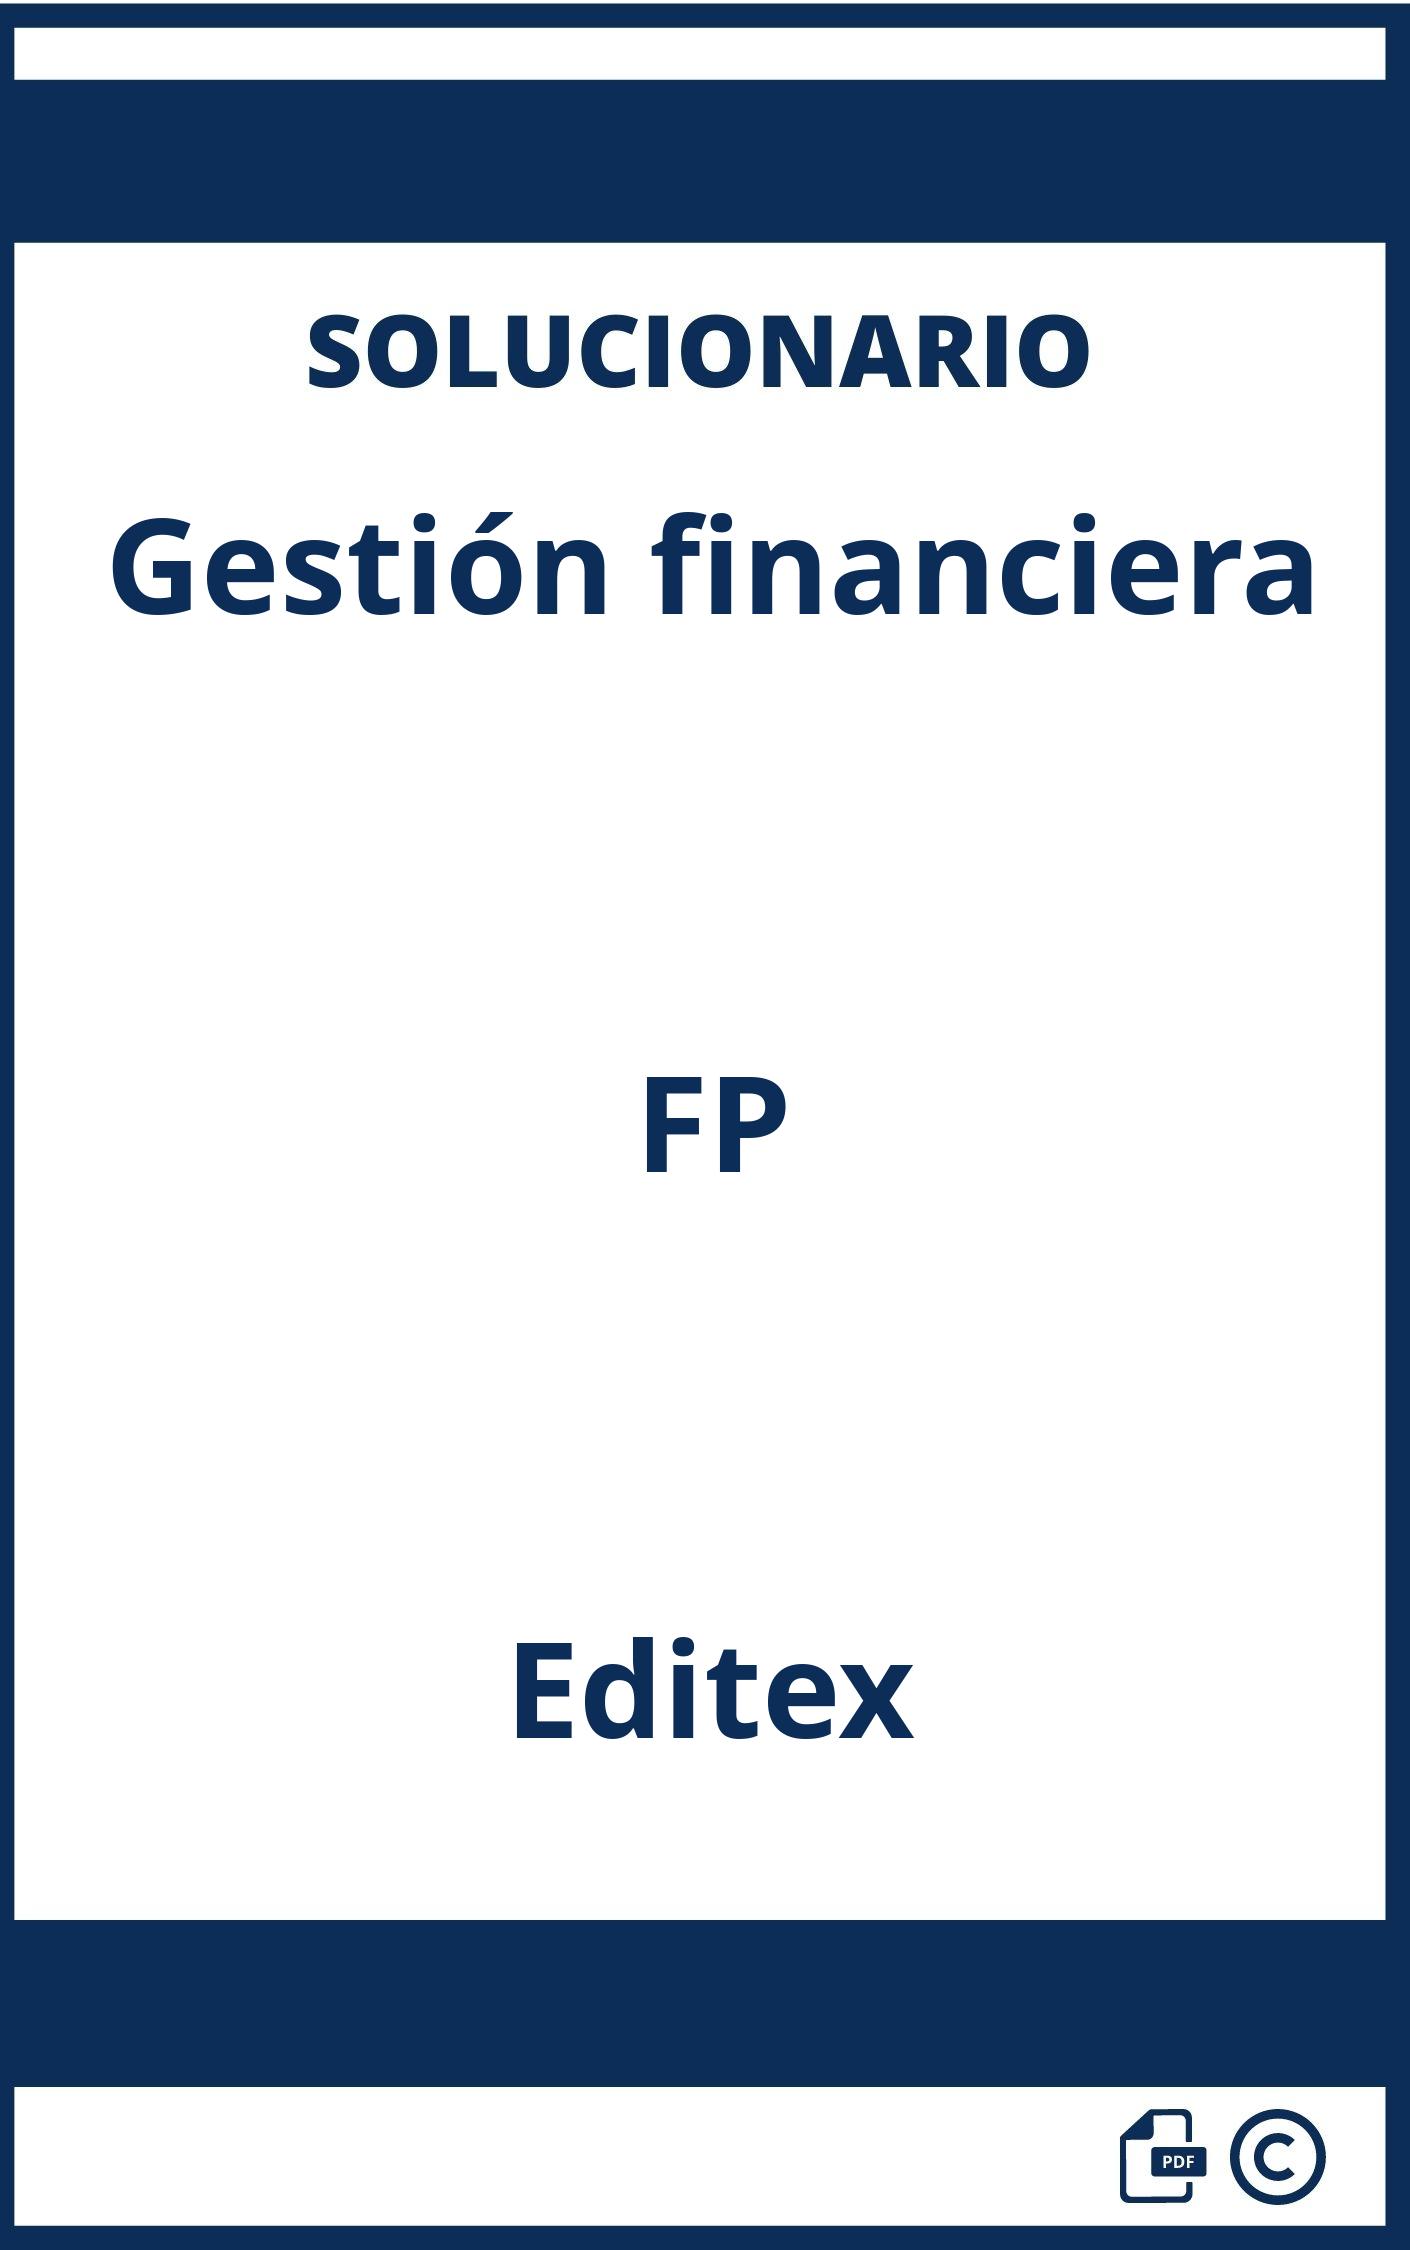 Solucionario Gestión financiera FP Editex